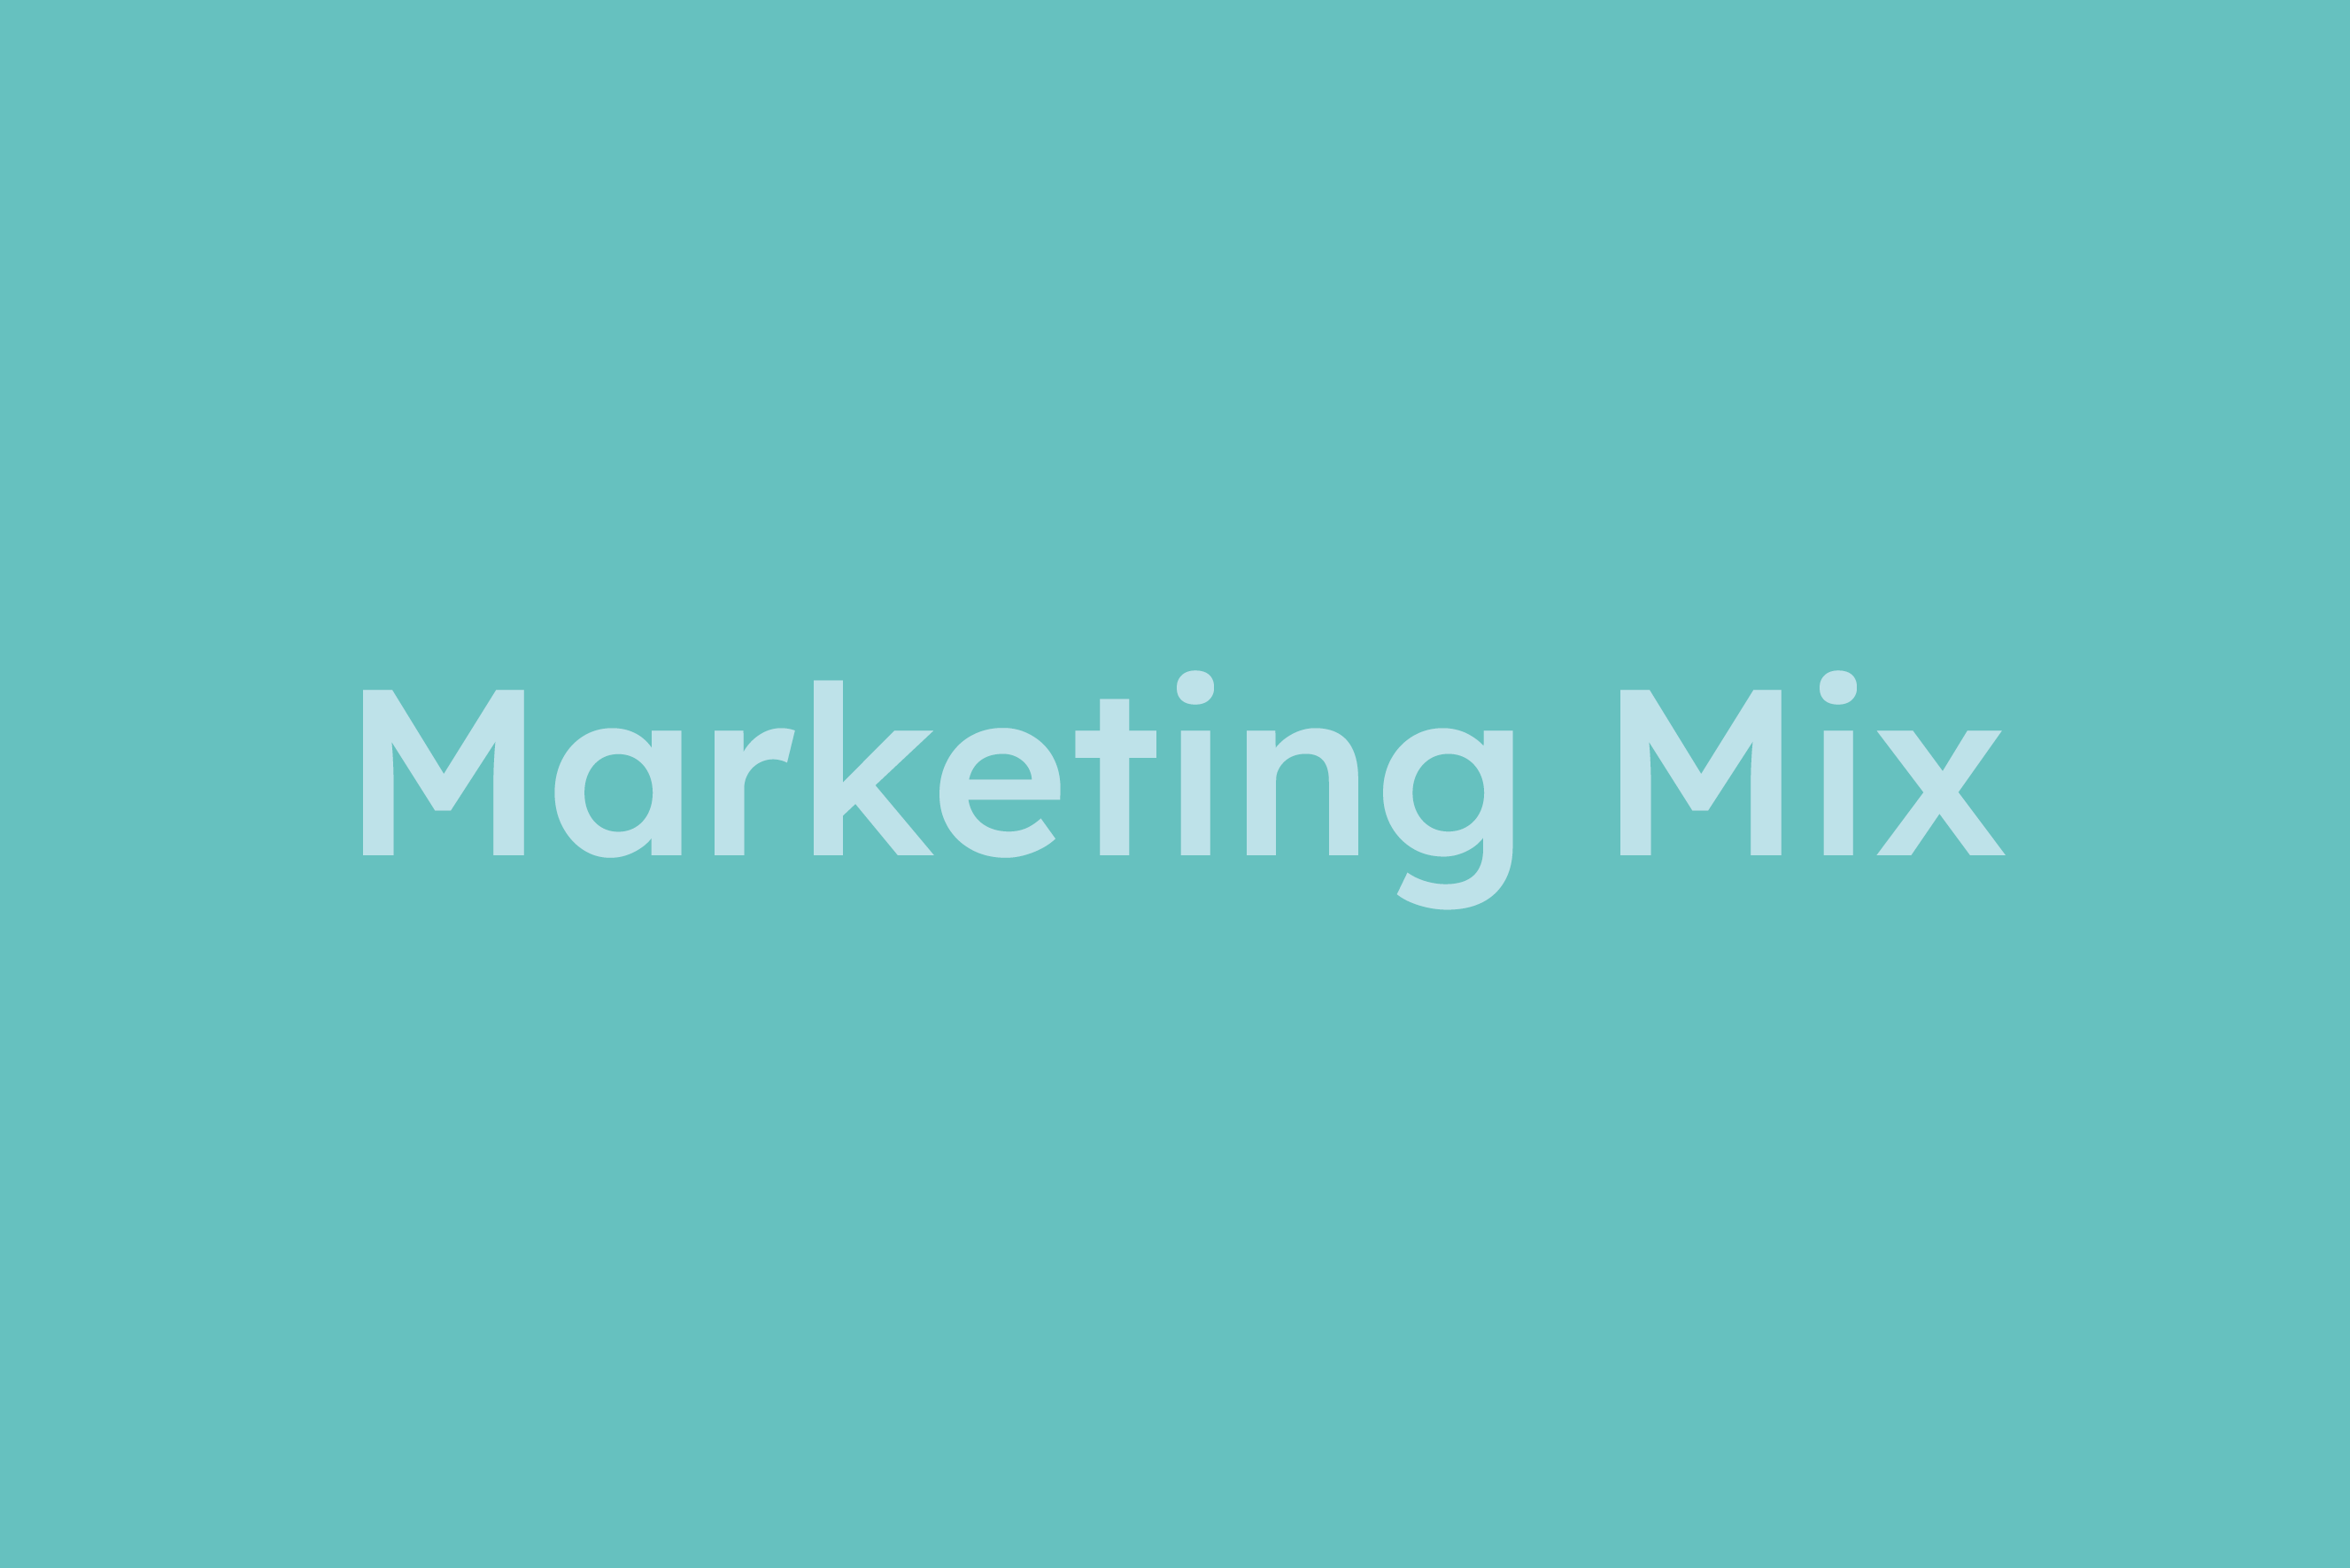 Marketing-Mix erklärt im Glossar von Campaign